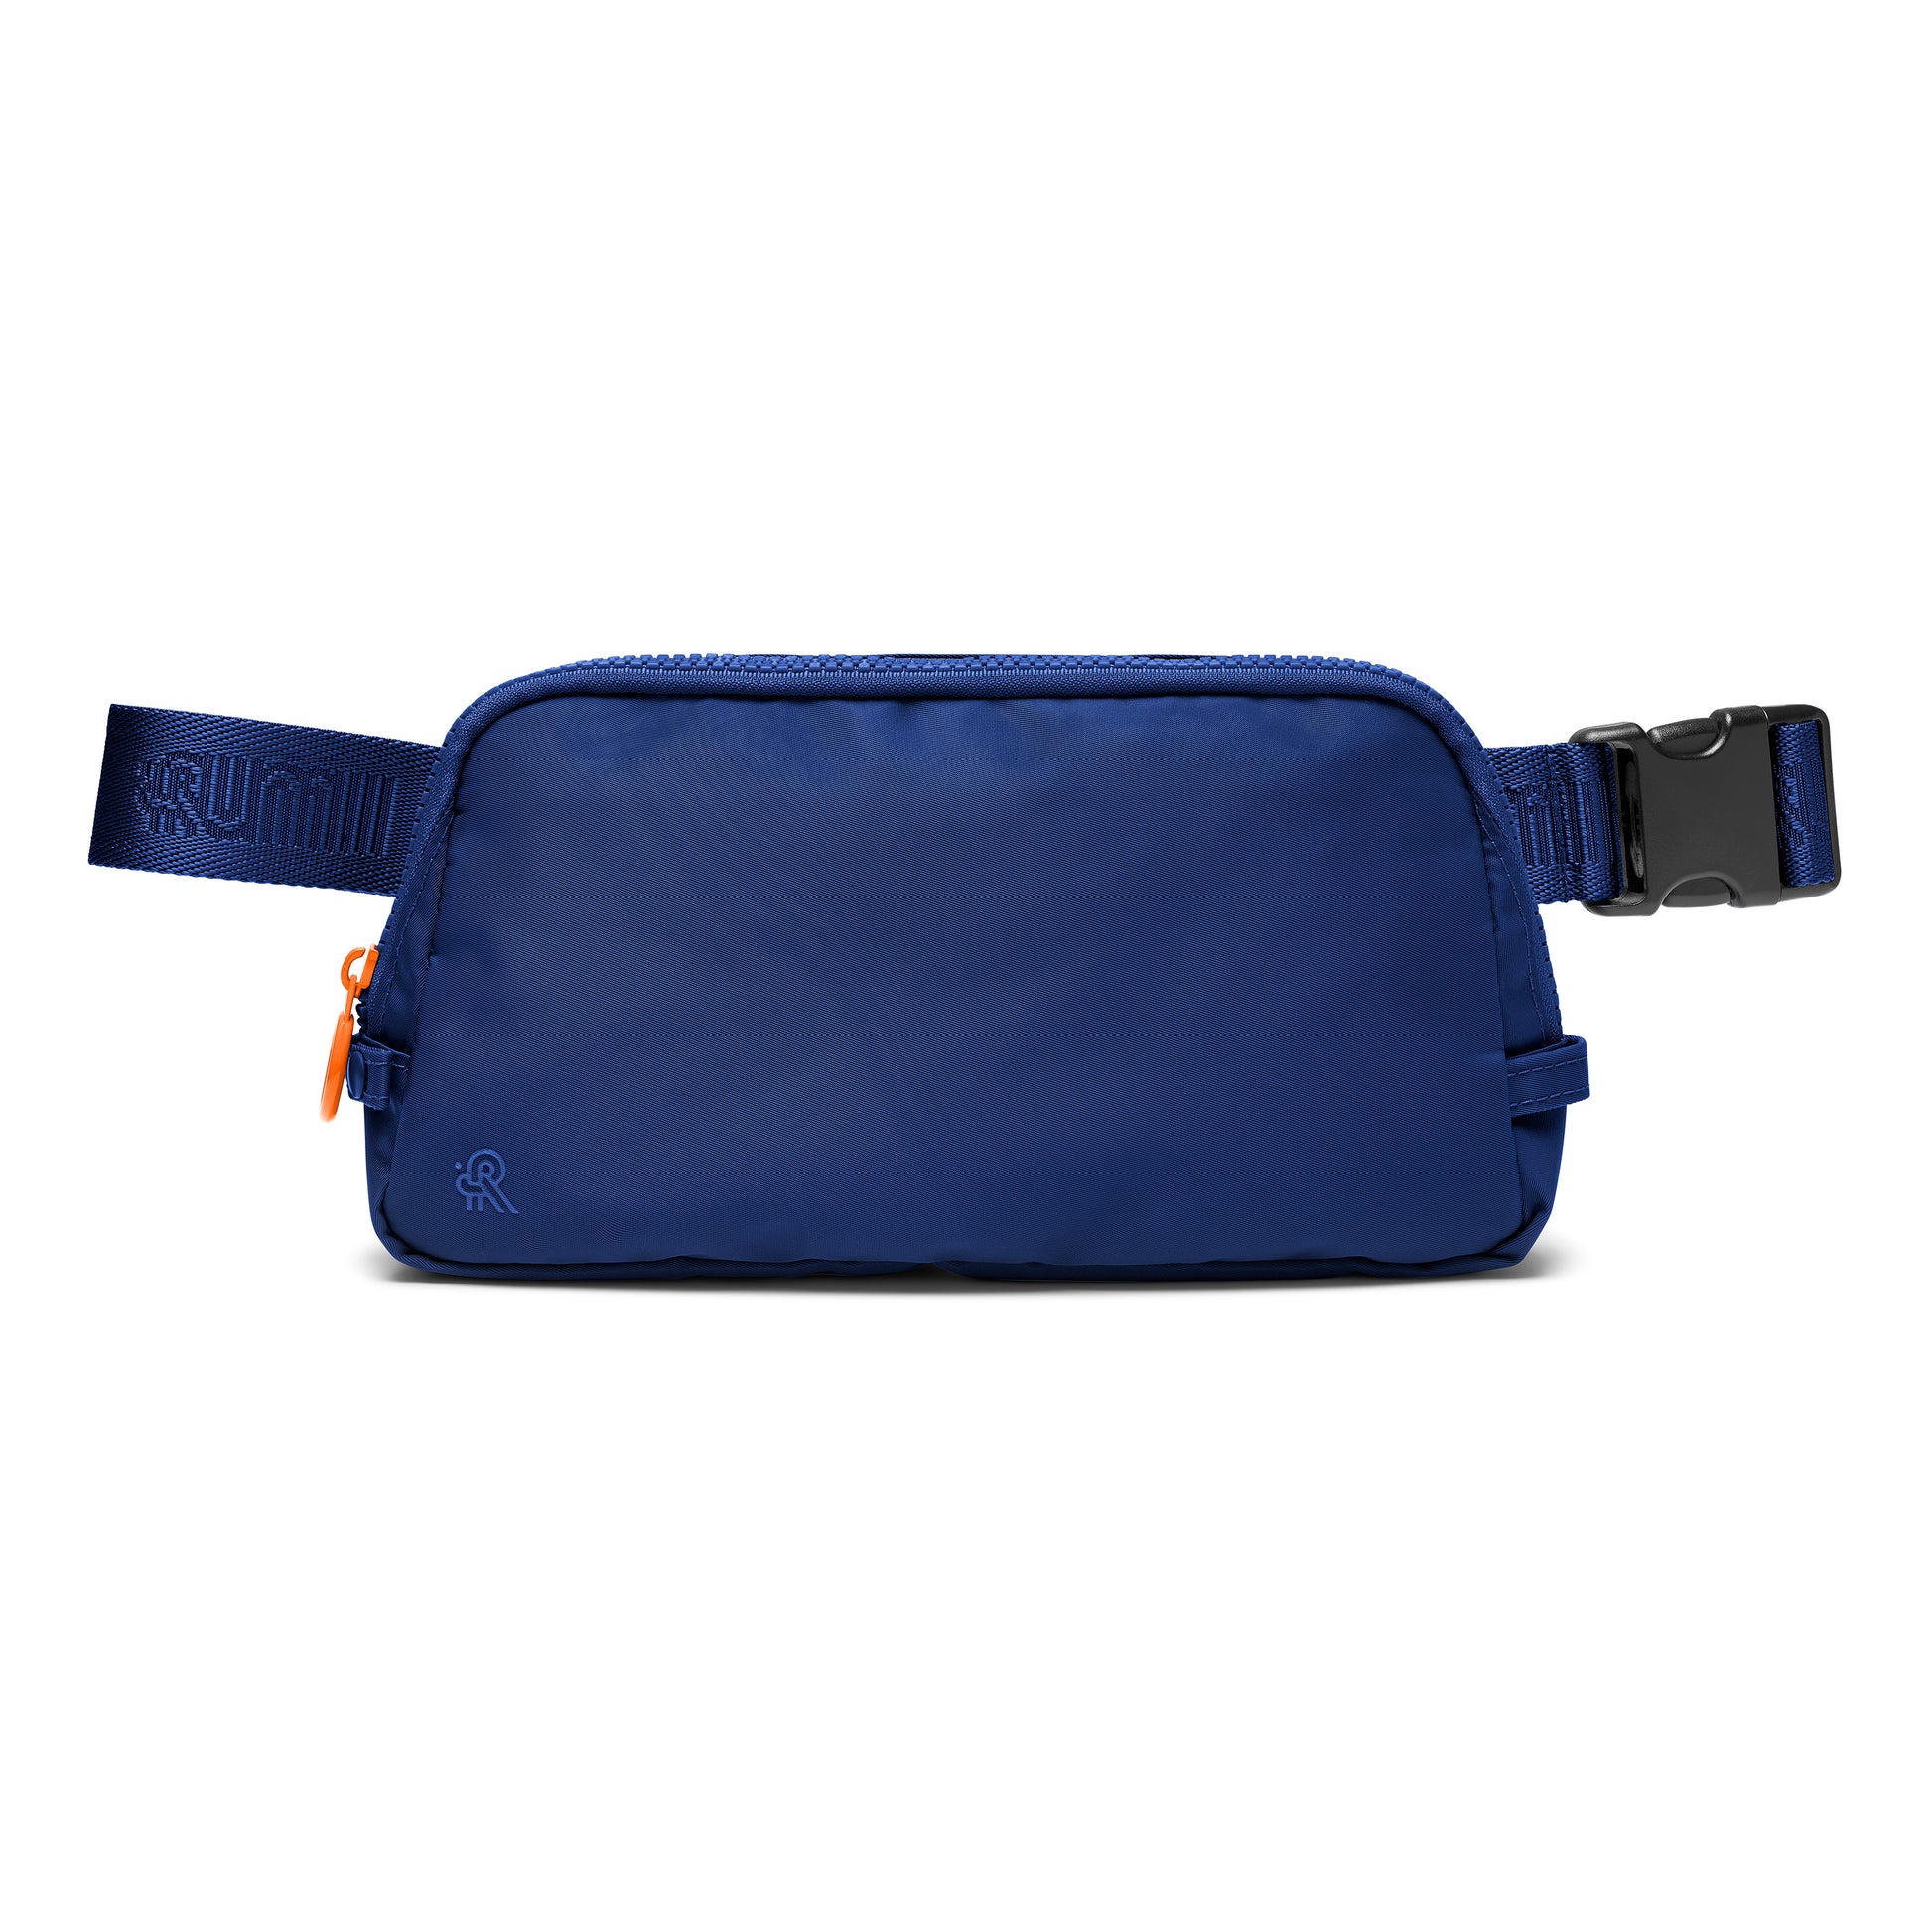 Navy blue and orange bag for nurses